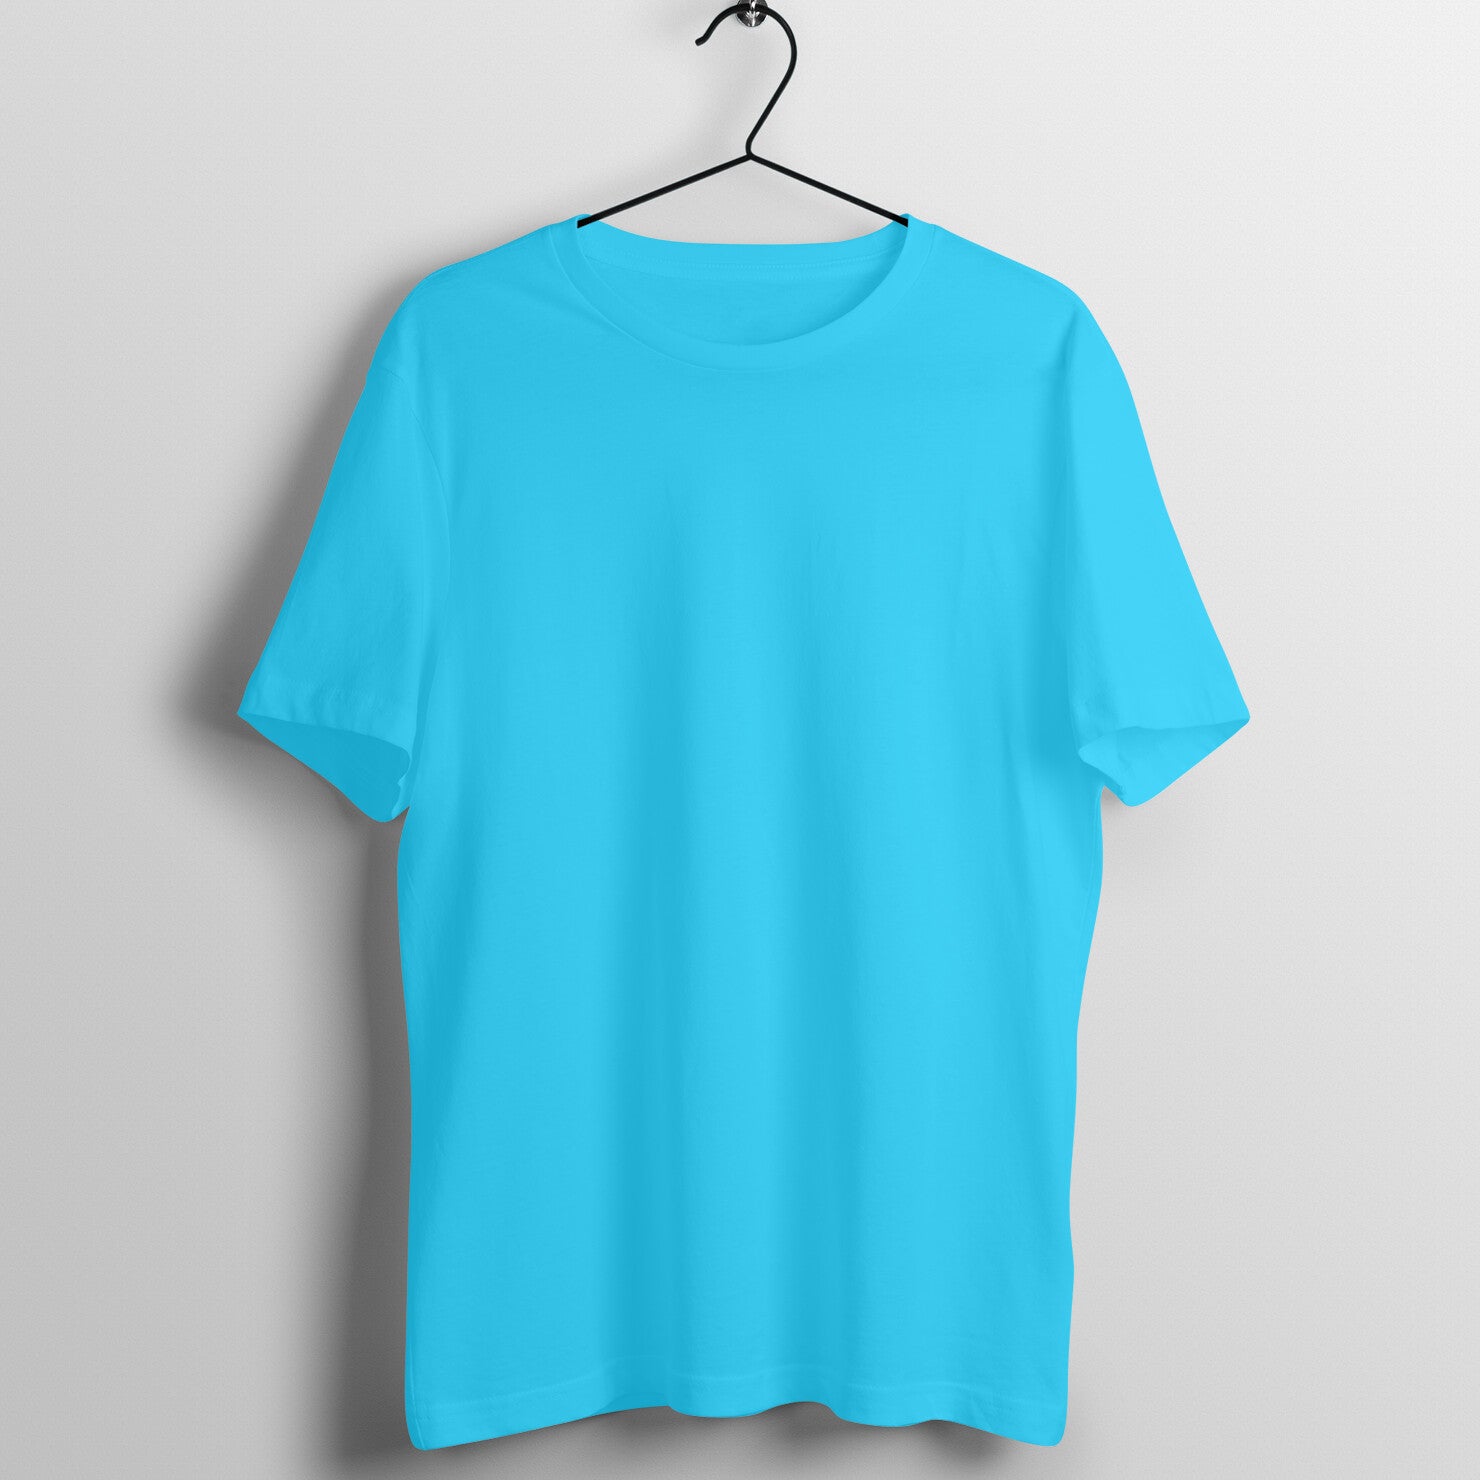 Skye Blue Half Sleeve Round Neck T-Shirt - Lukuna